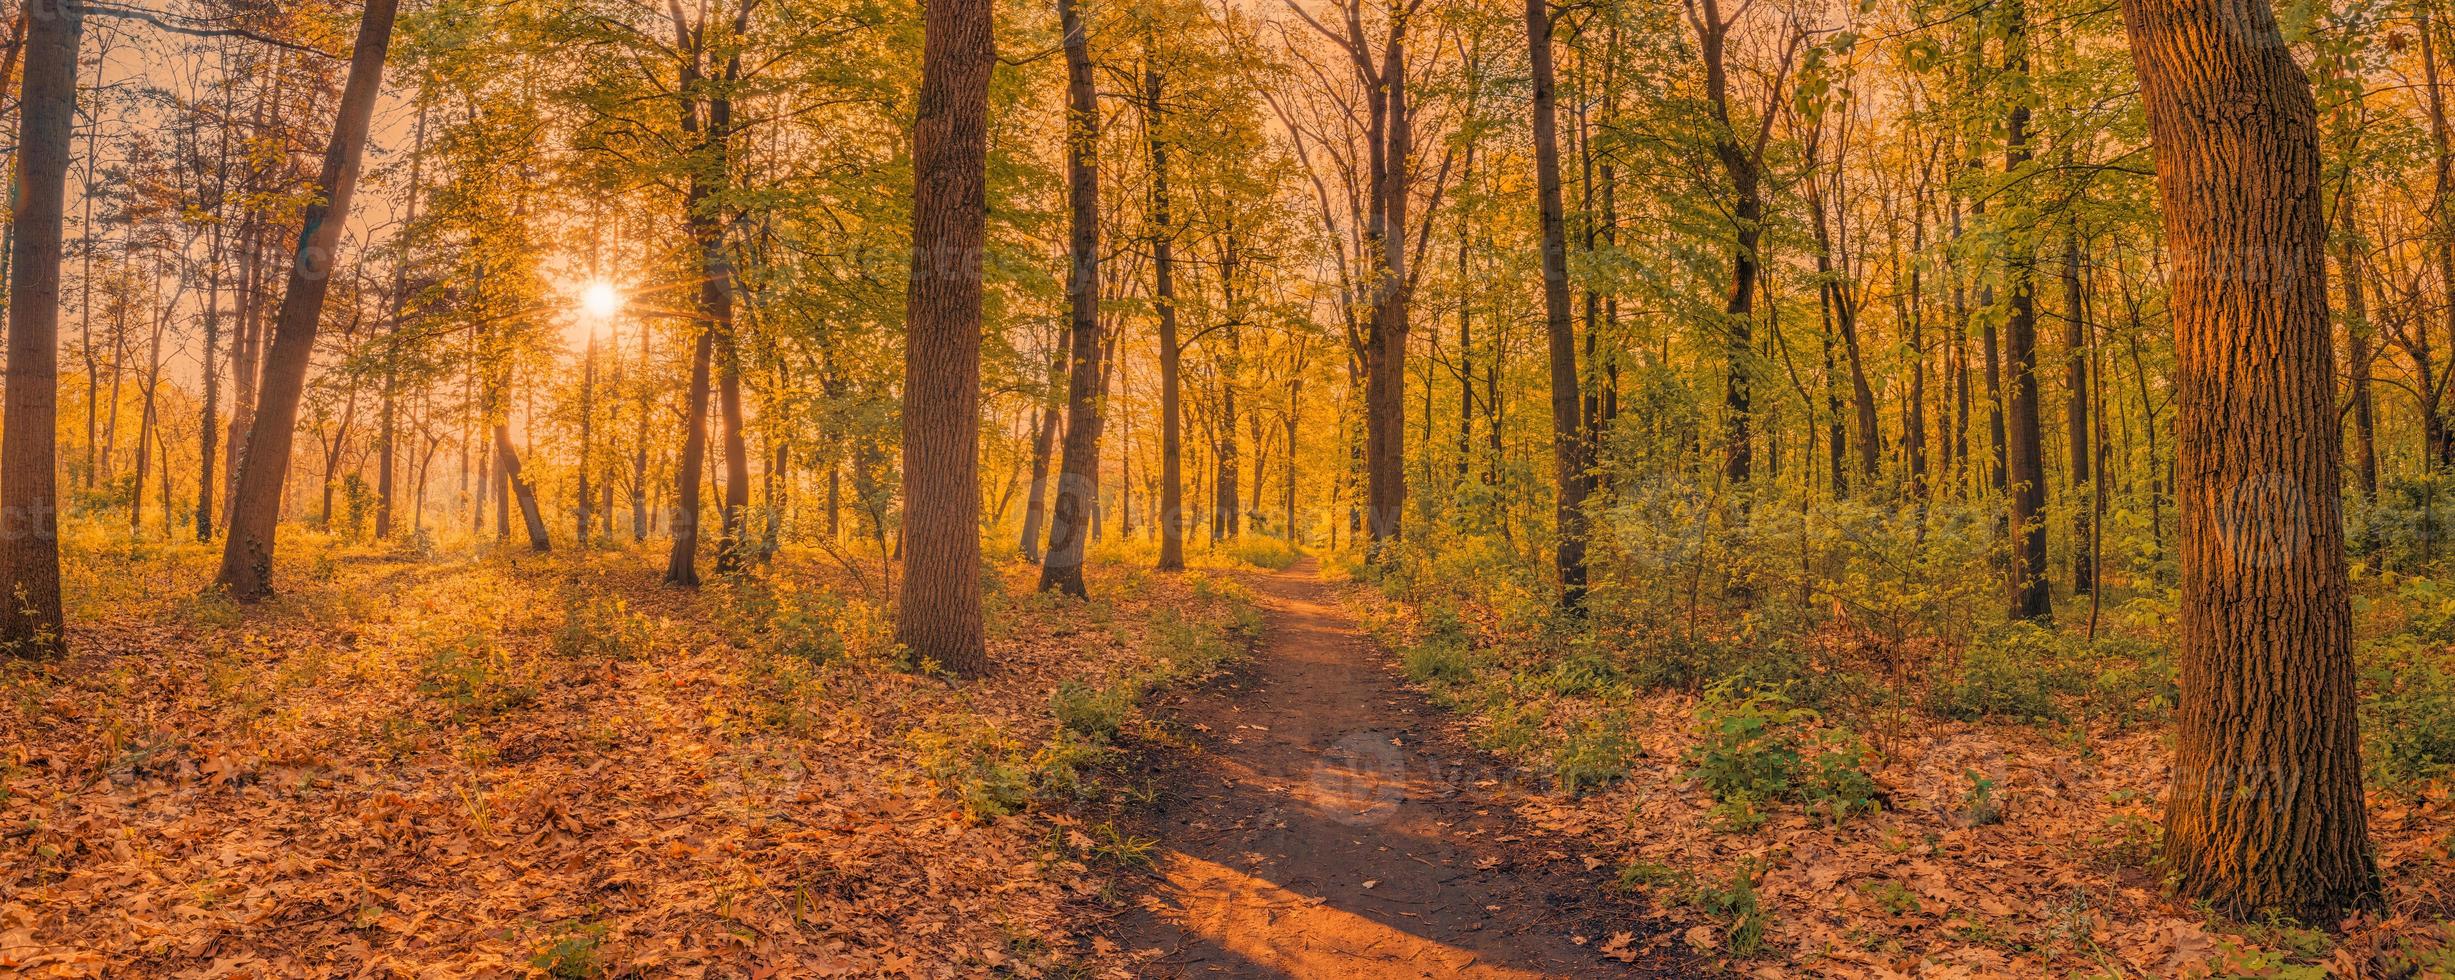 erstaunliche Herbstlandschaft. Panorama Waldnatur. lebhafter morgen in buntem wald mit sonnenstrahlen orange goldenen blättern bäume. idyllischer sonnenuntergang, traumhafter landschaftlicher weg der fantasie. schöner herbst park fußweg foto